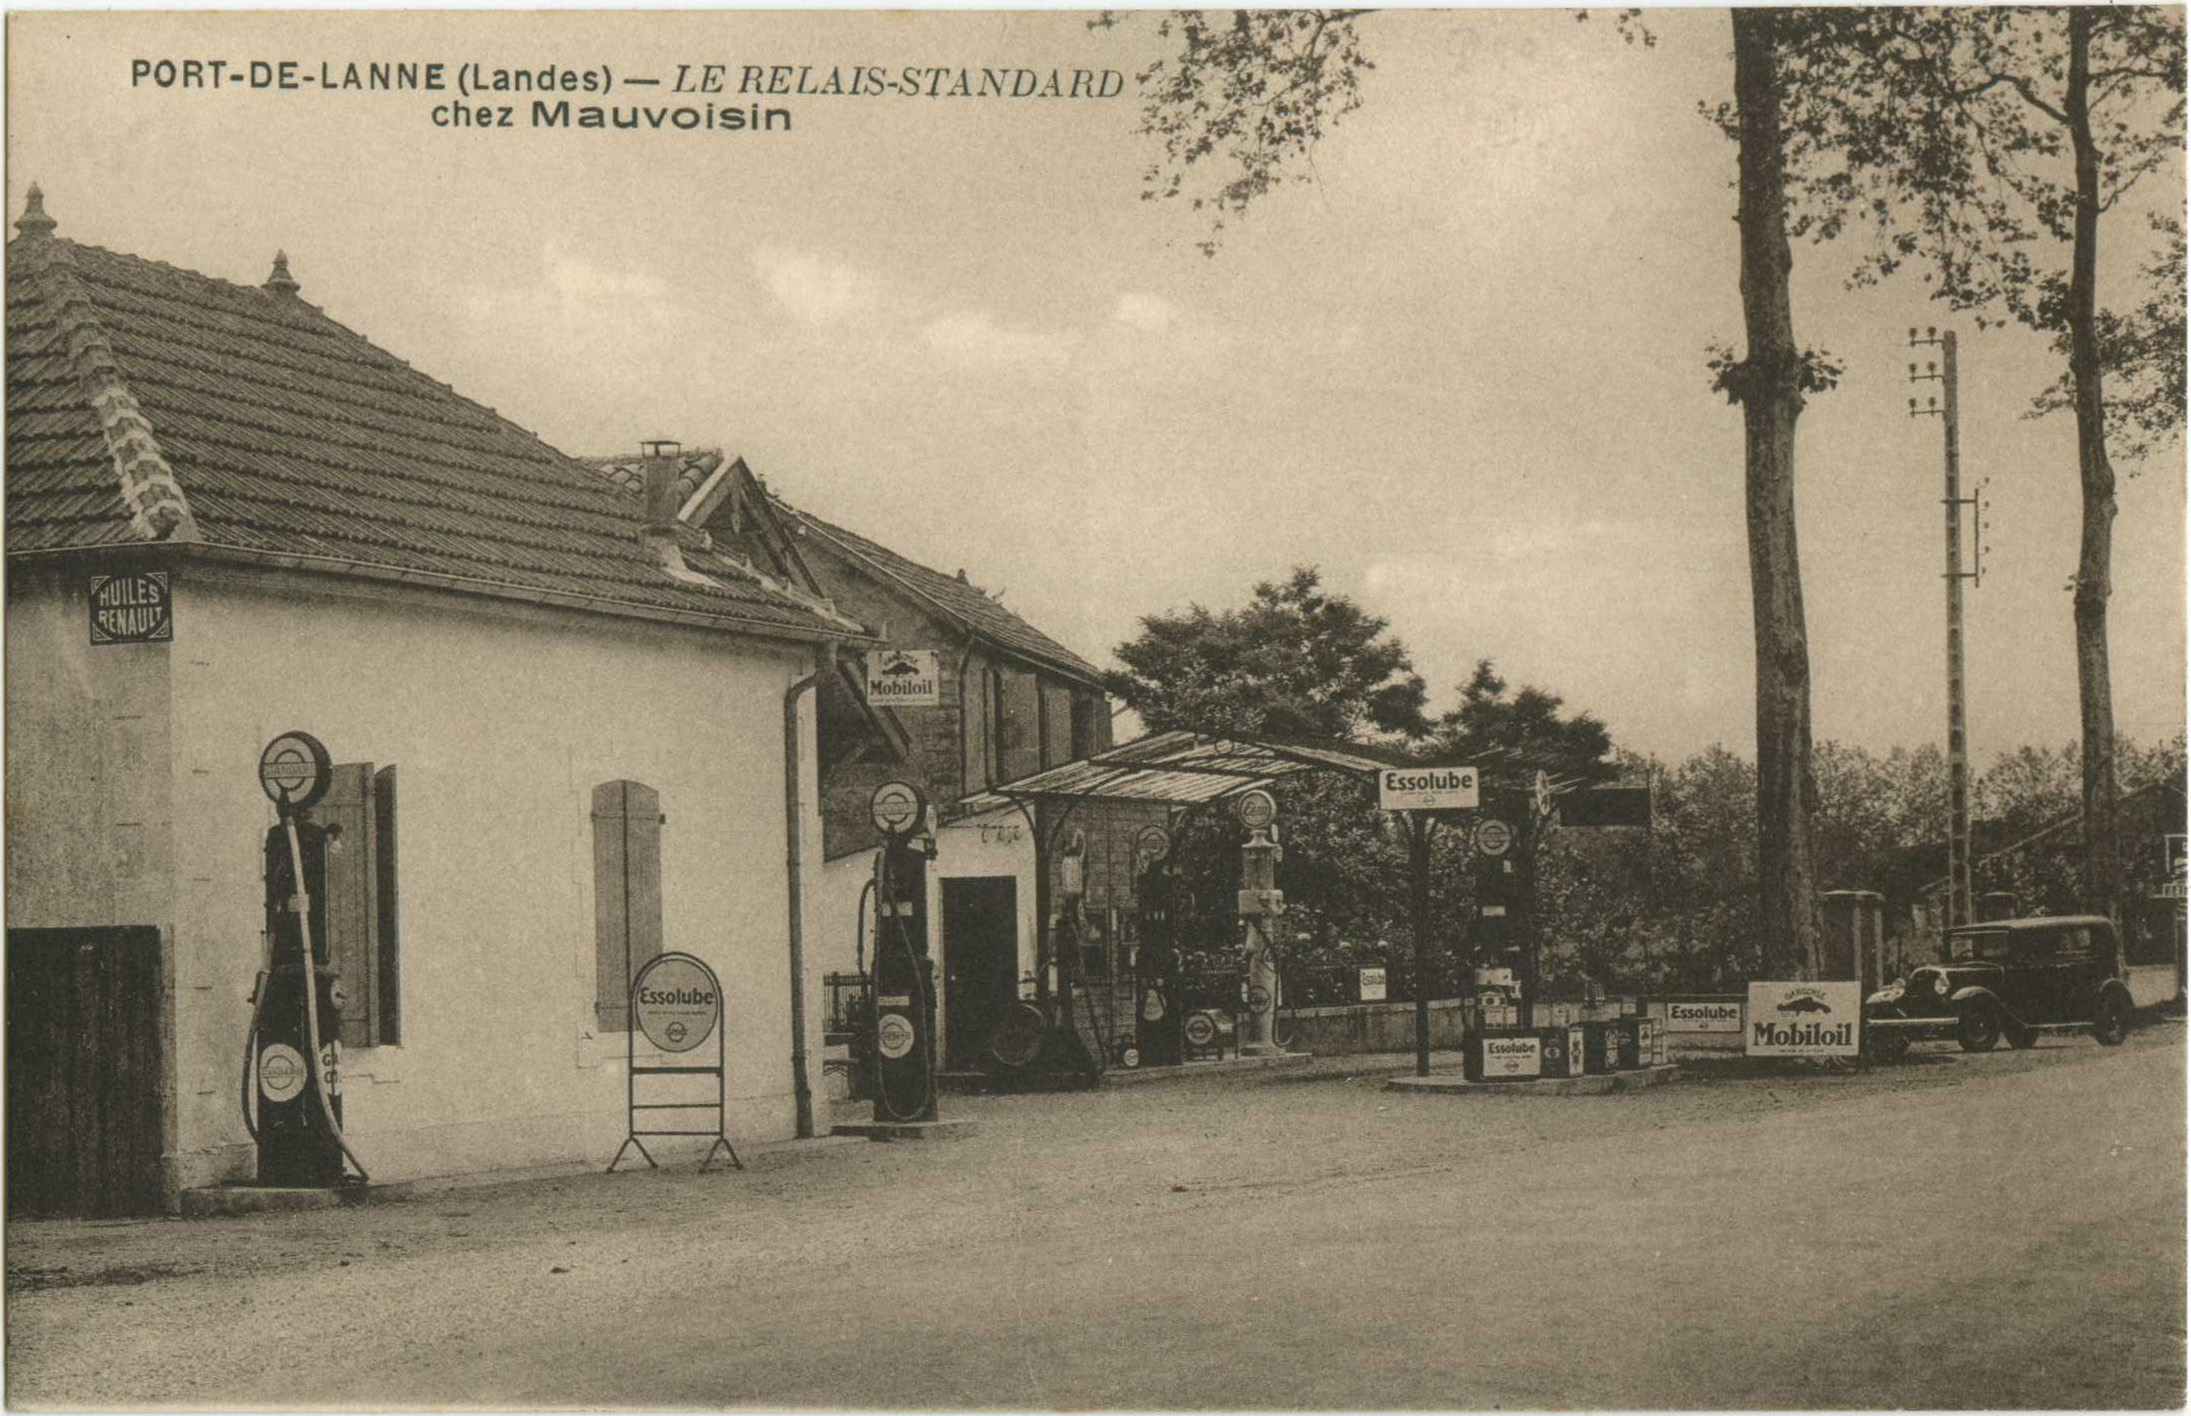 Port-de-Lanne - LE RELAIS-STANDARD - chez Mauvoisin